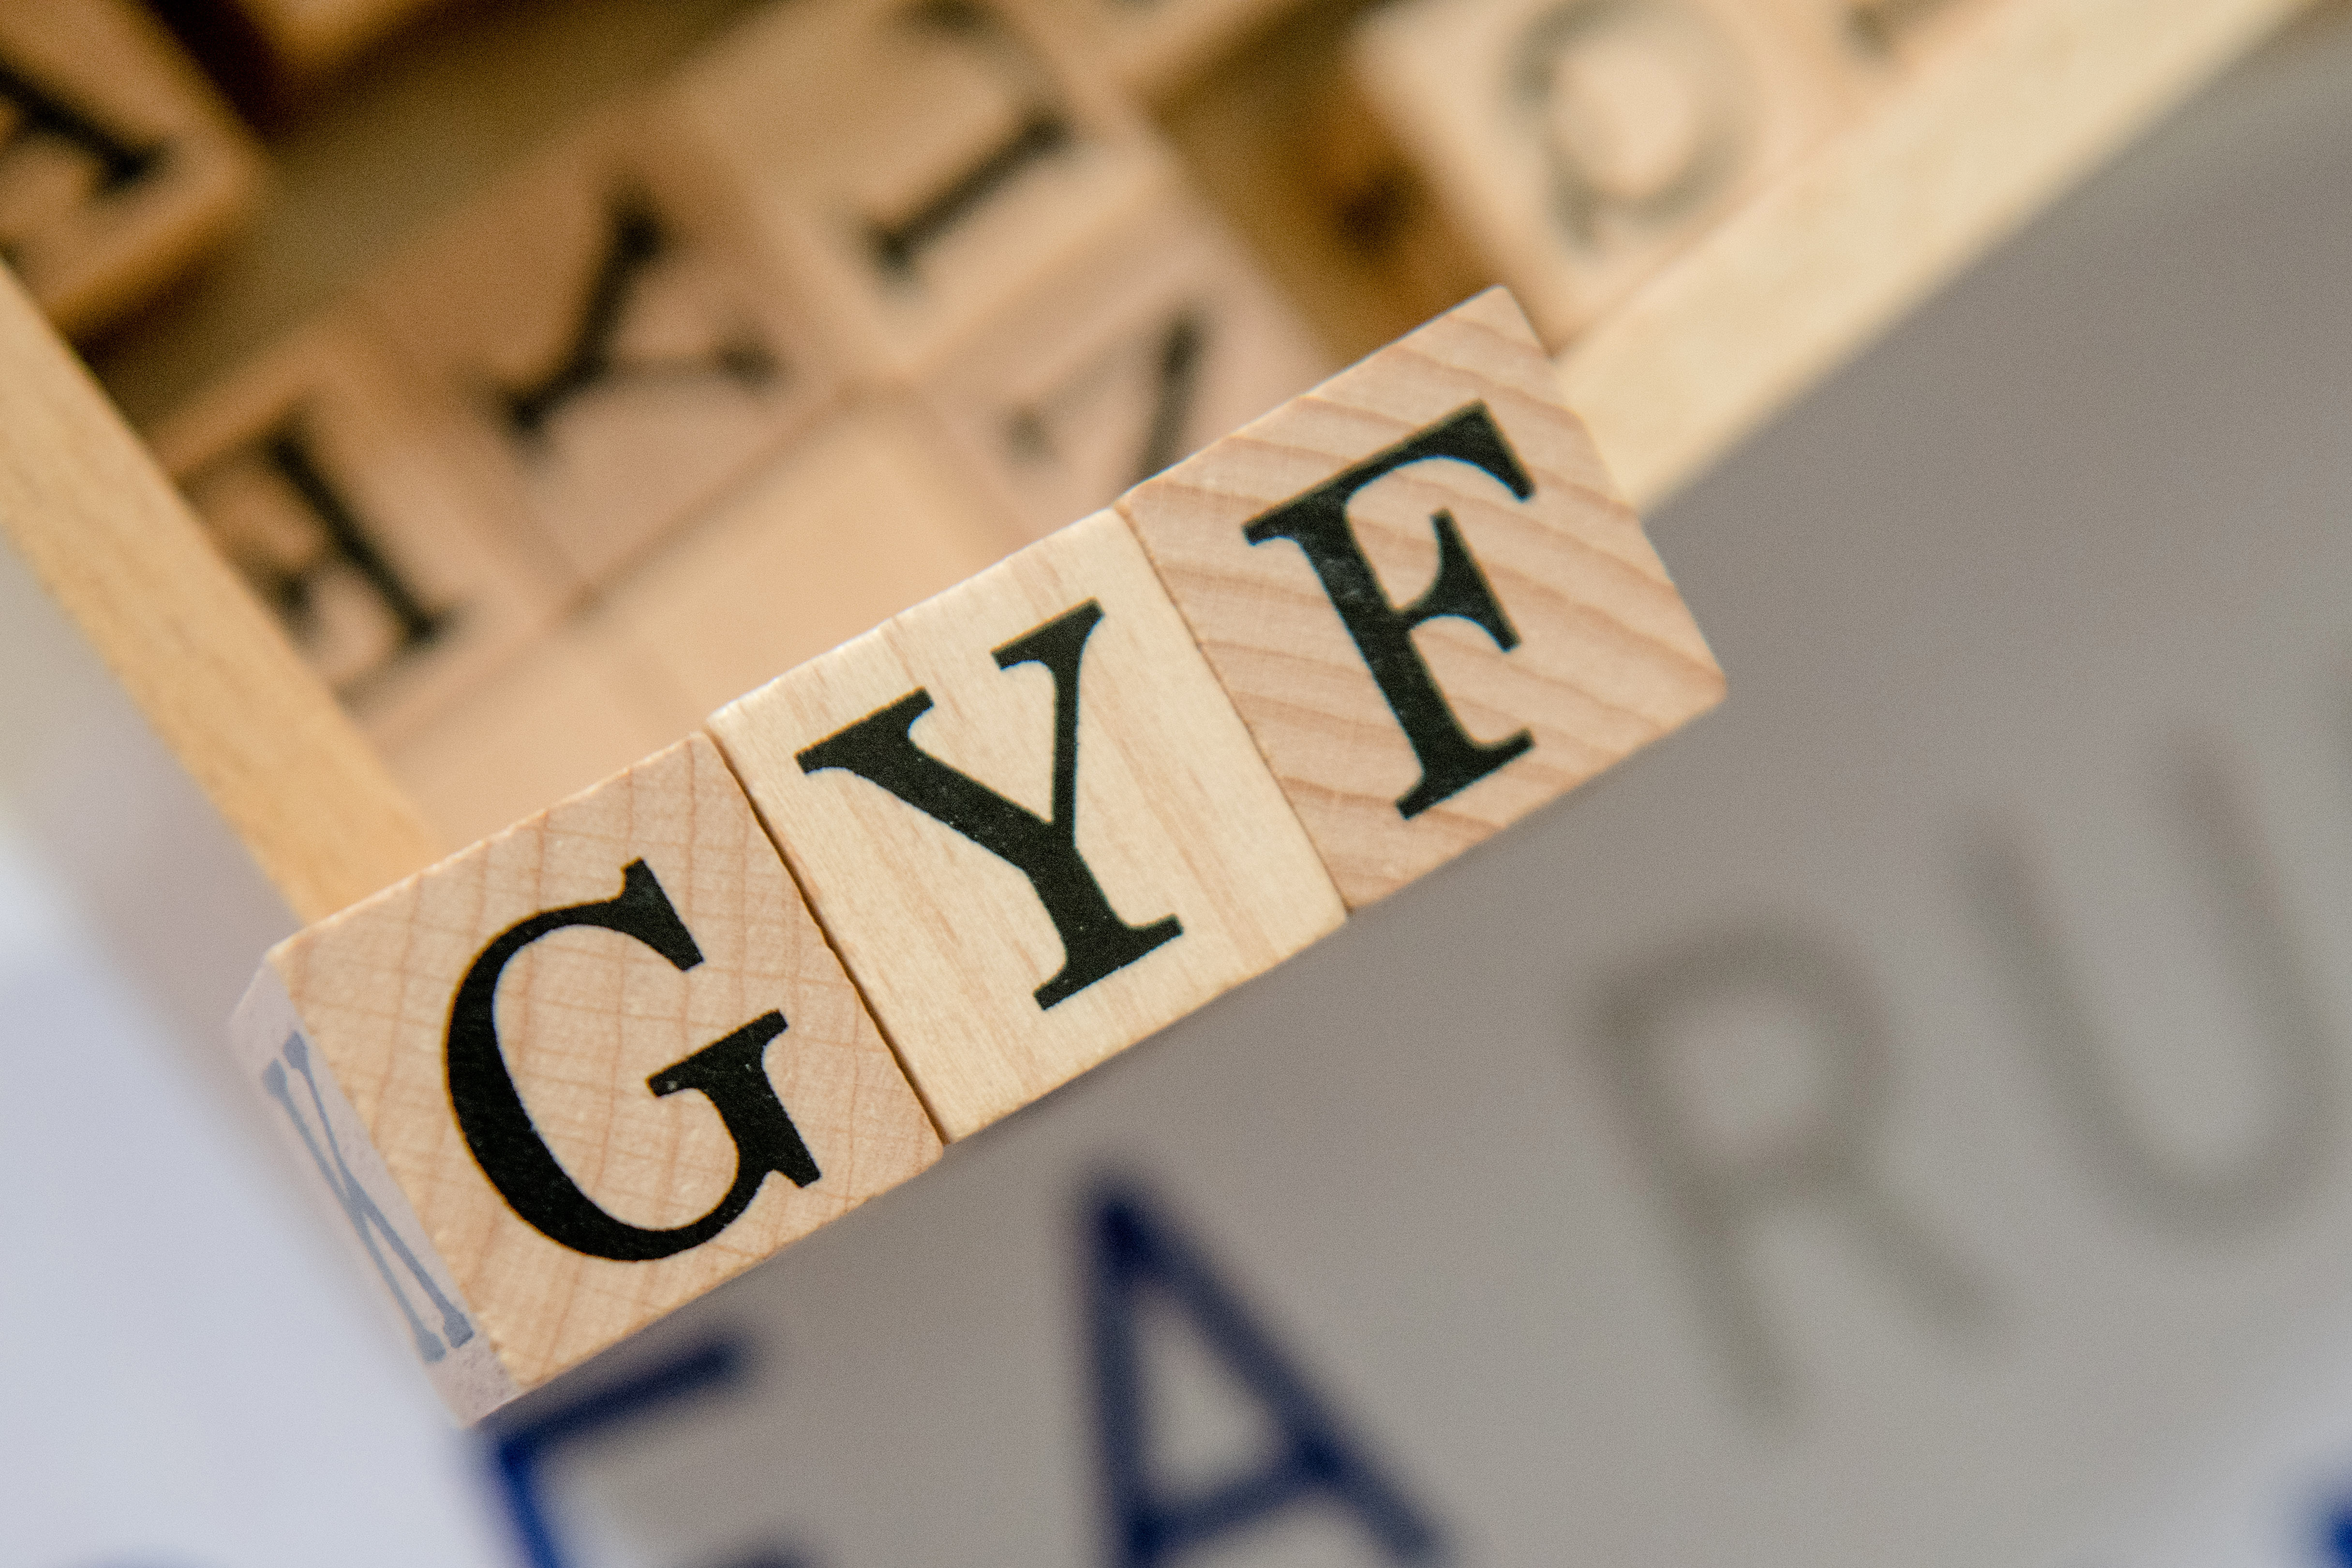 Buchstabenwürfel, mit denen die Abkürzung GYF geschrieben ist